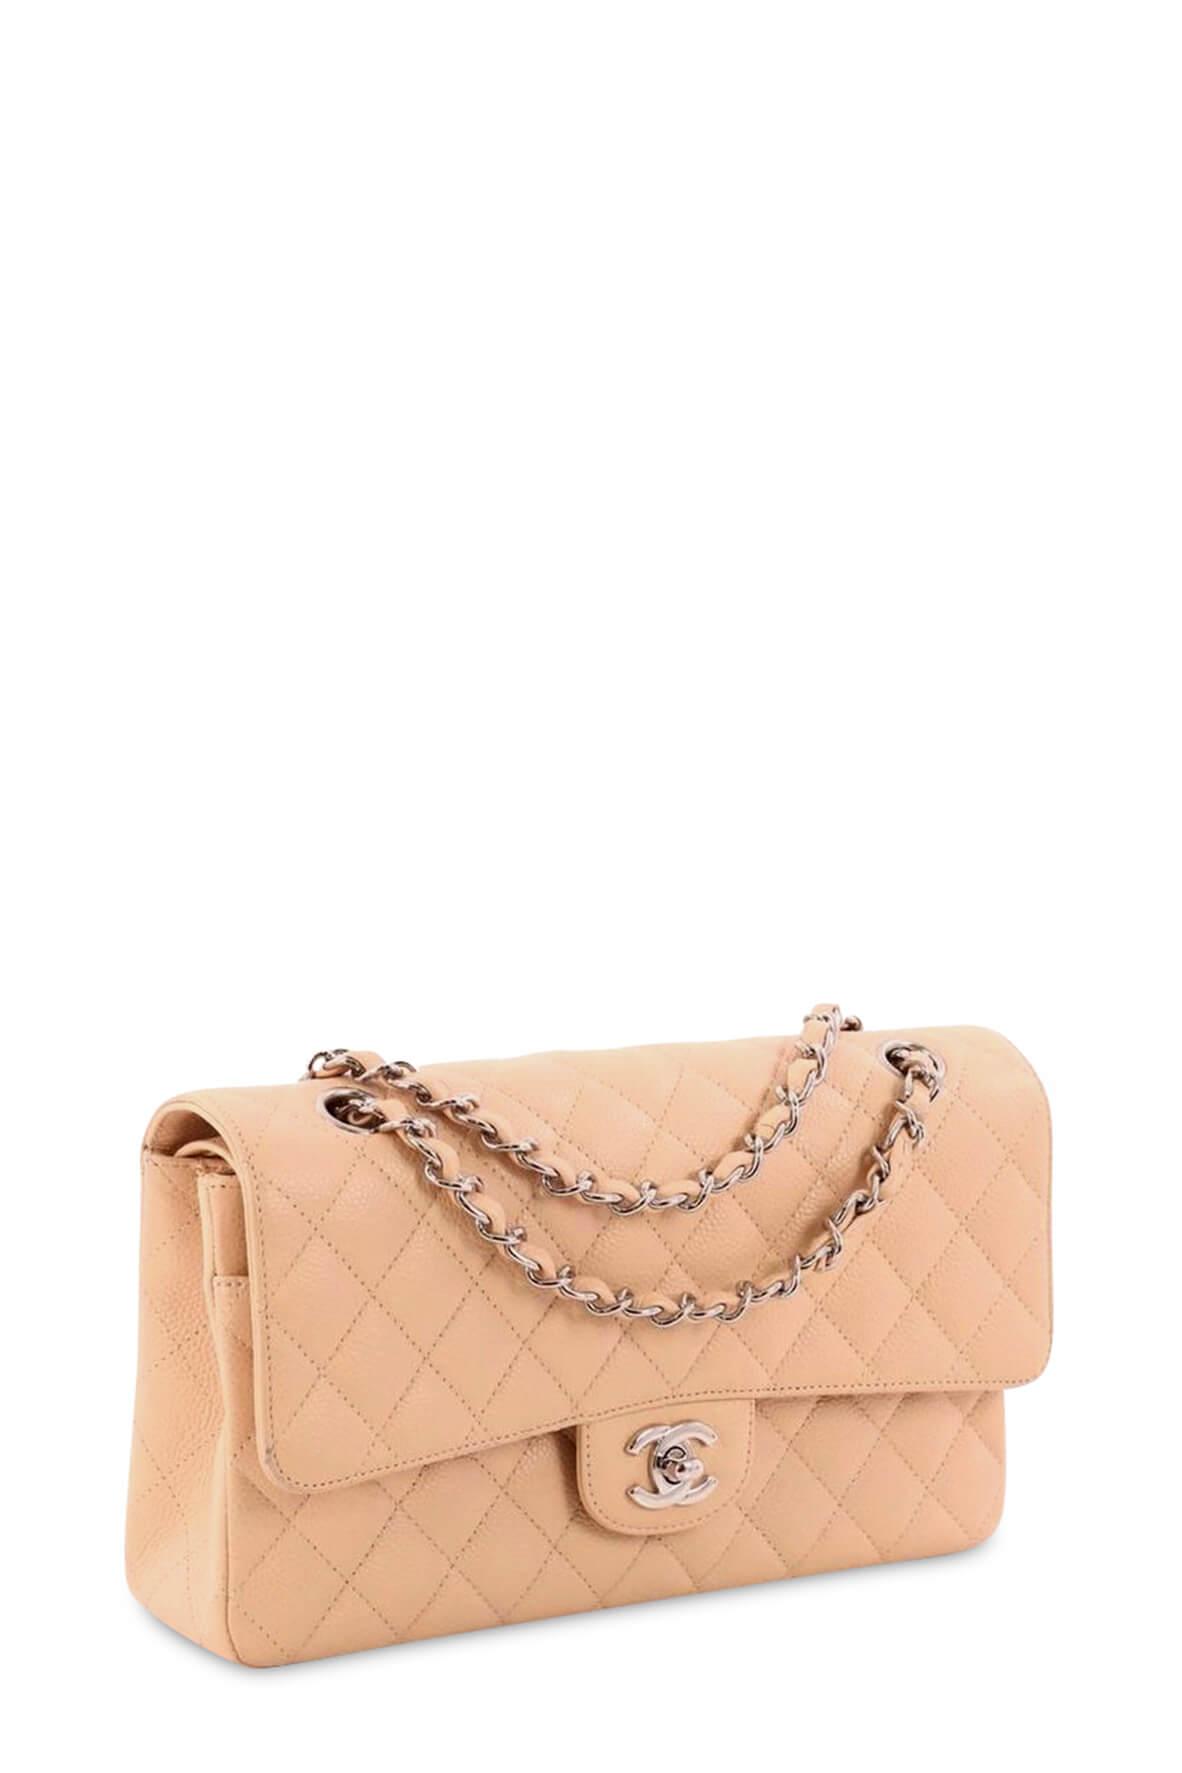 The Chanel Classic Flap Bag A real investment  lÉtoile de Saint Honoré